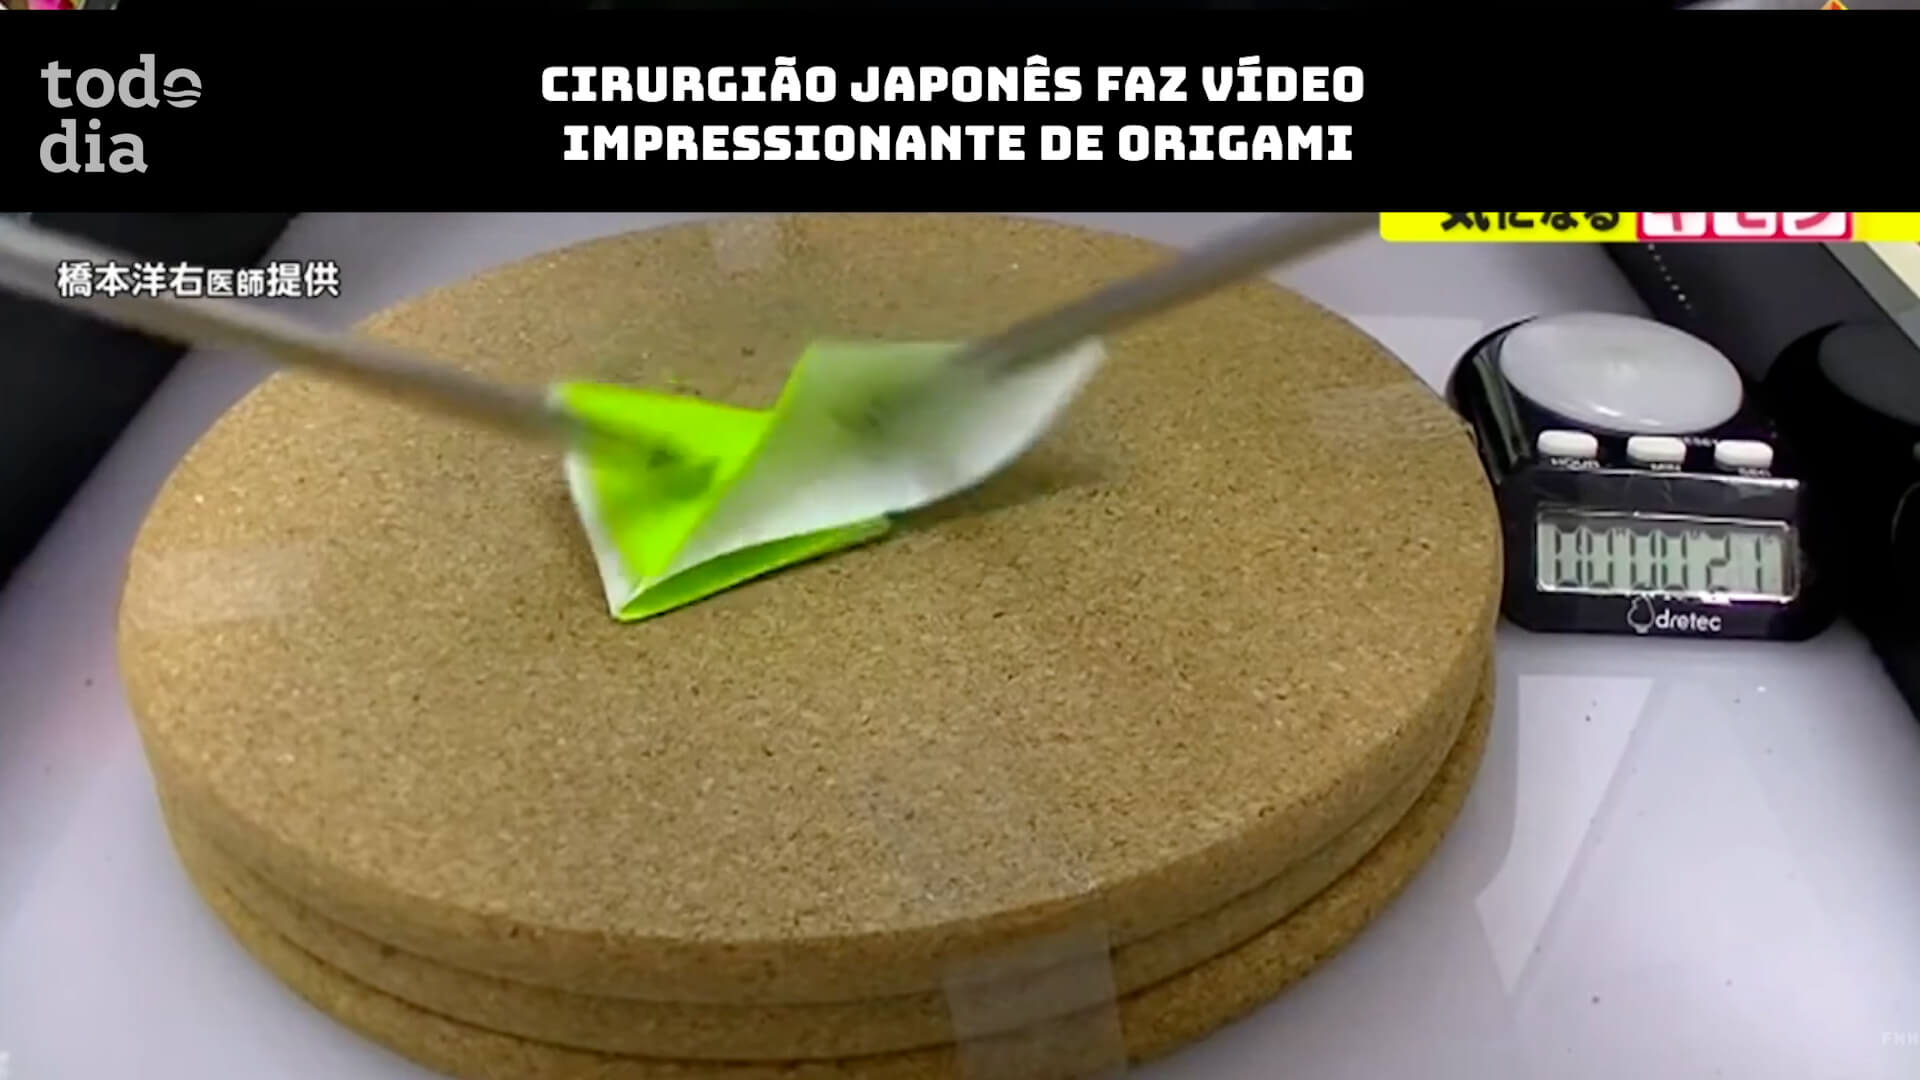 Cirurgião japonês faz vídeo impressionante de origami 